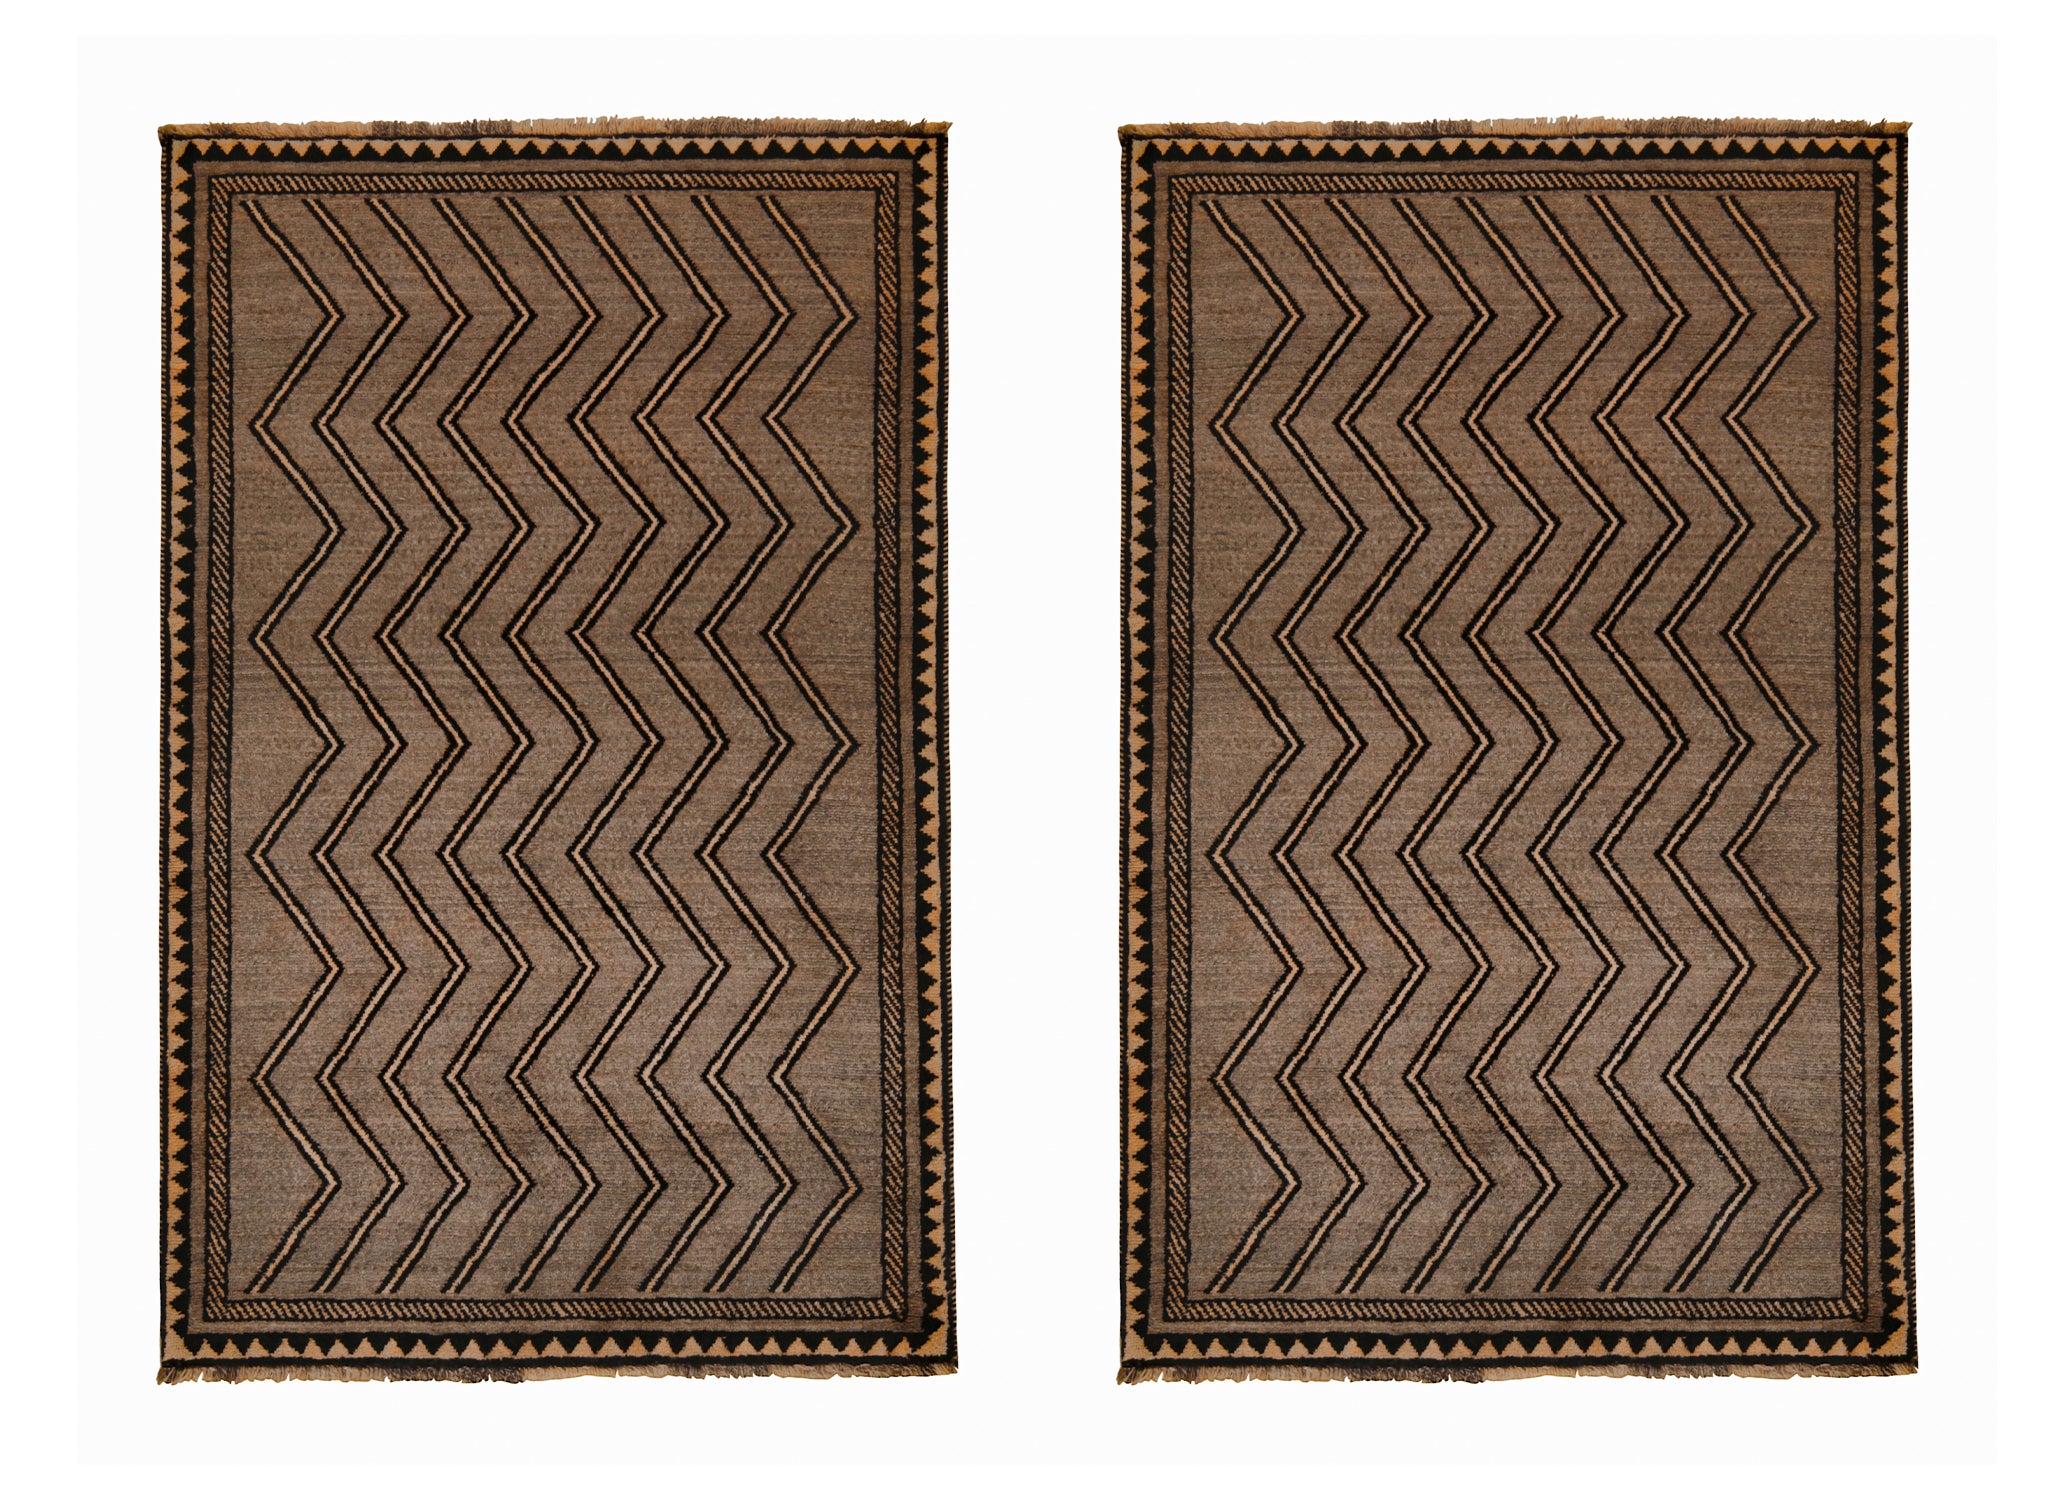 Vintage Gabbeh Tribal Rug in Beige-Brown & Black Chevron Patterns by Rug Kilim